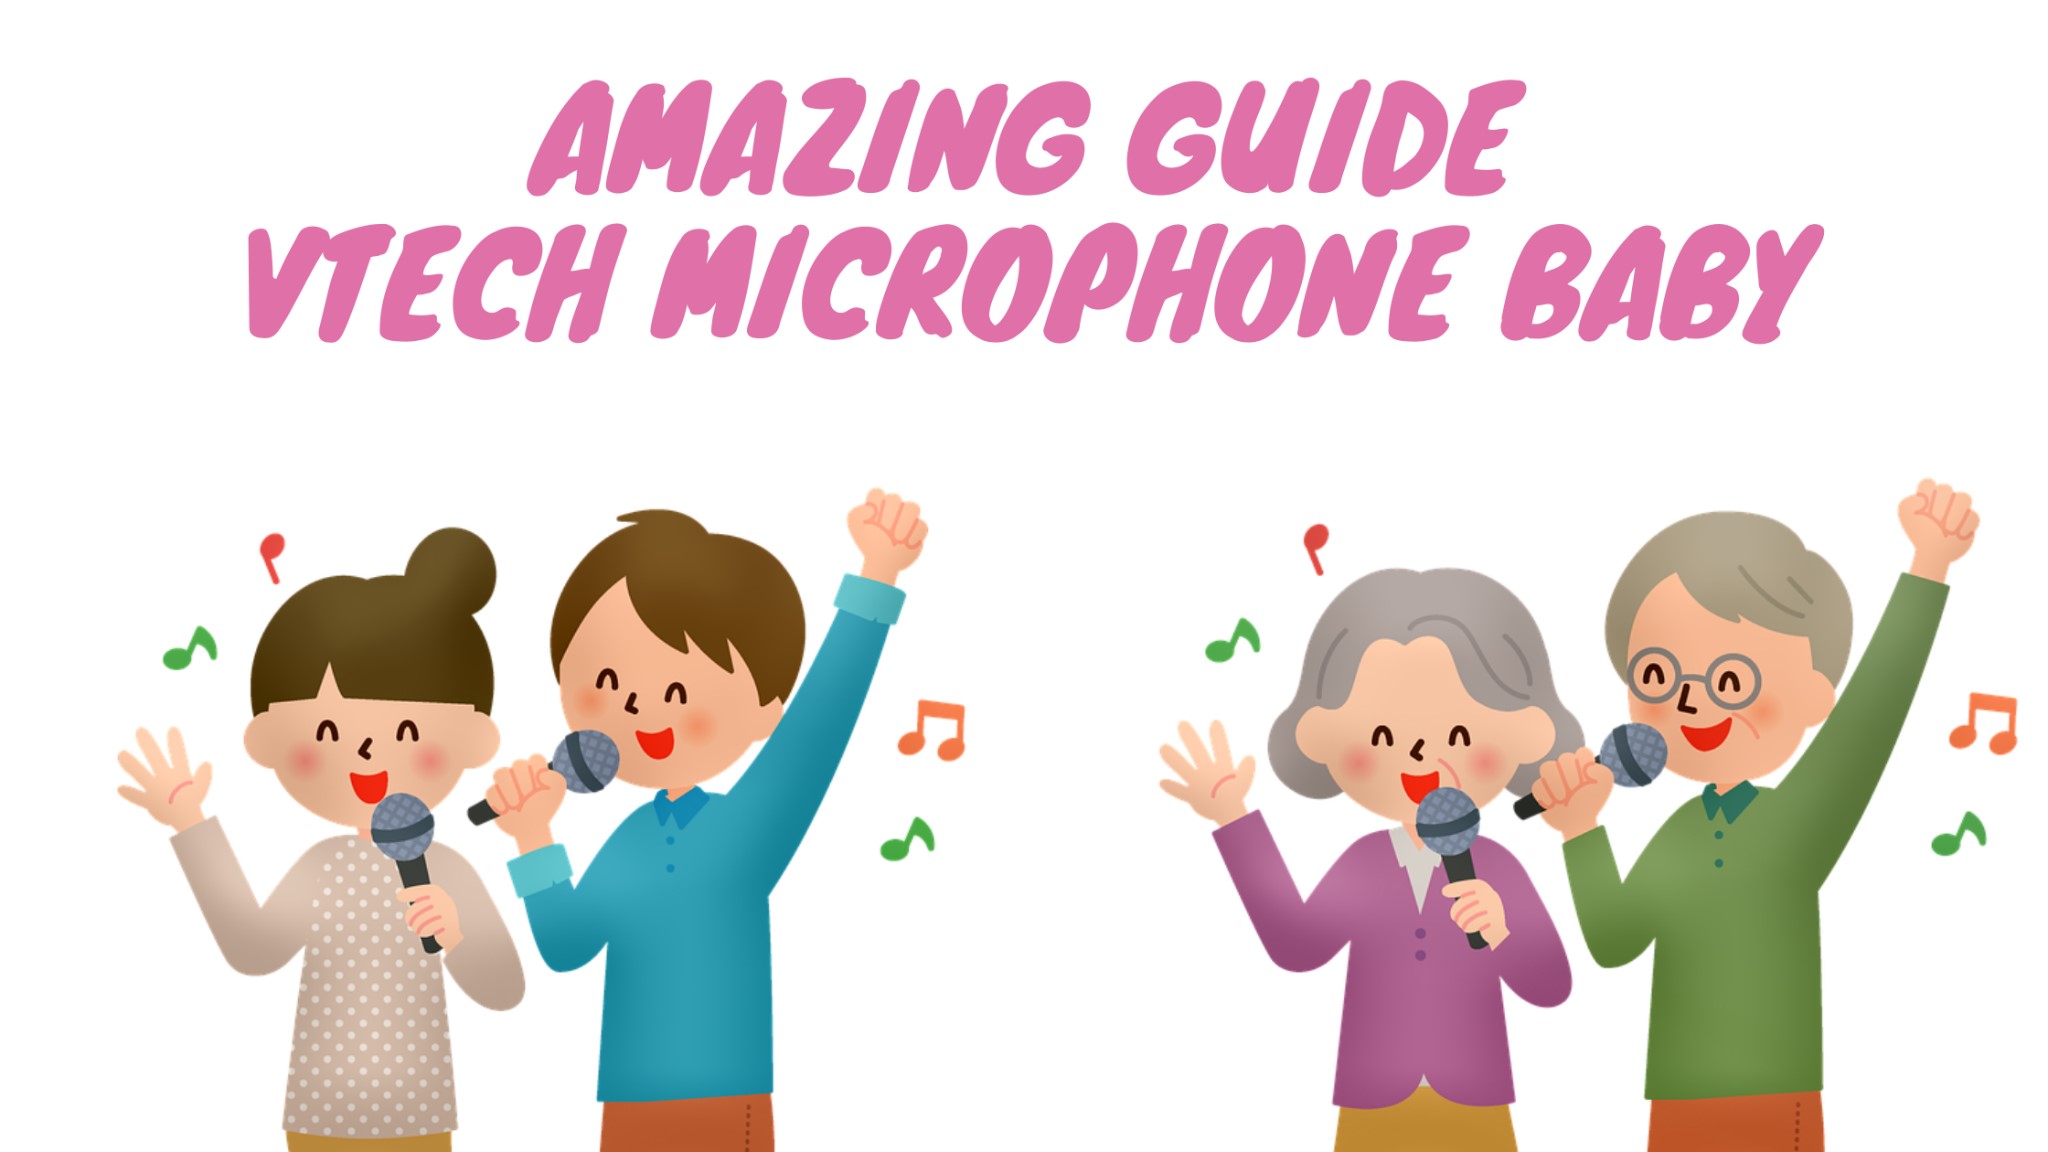 erstaunliche Anleitung Vtech-Mikrofon Baby